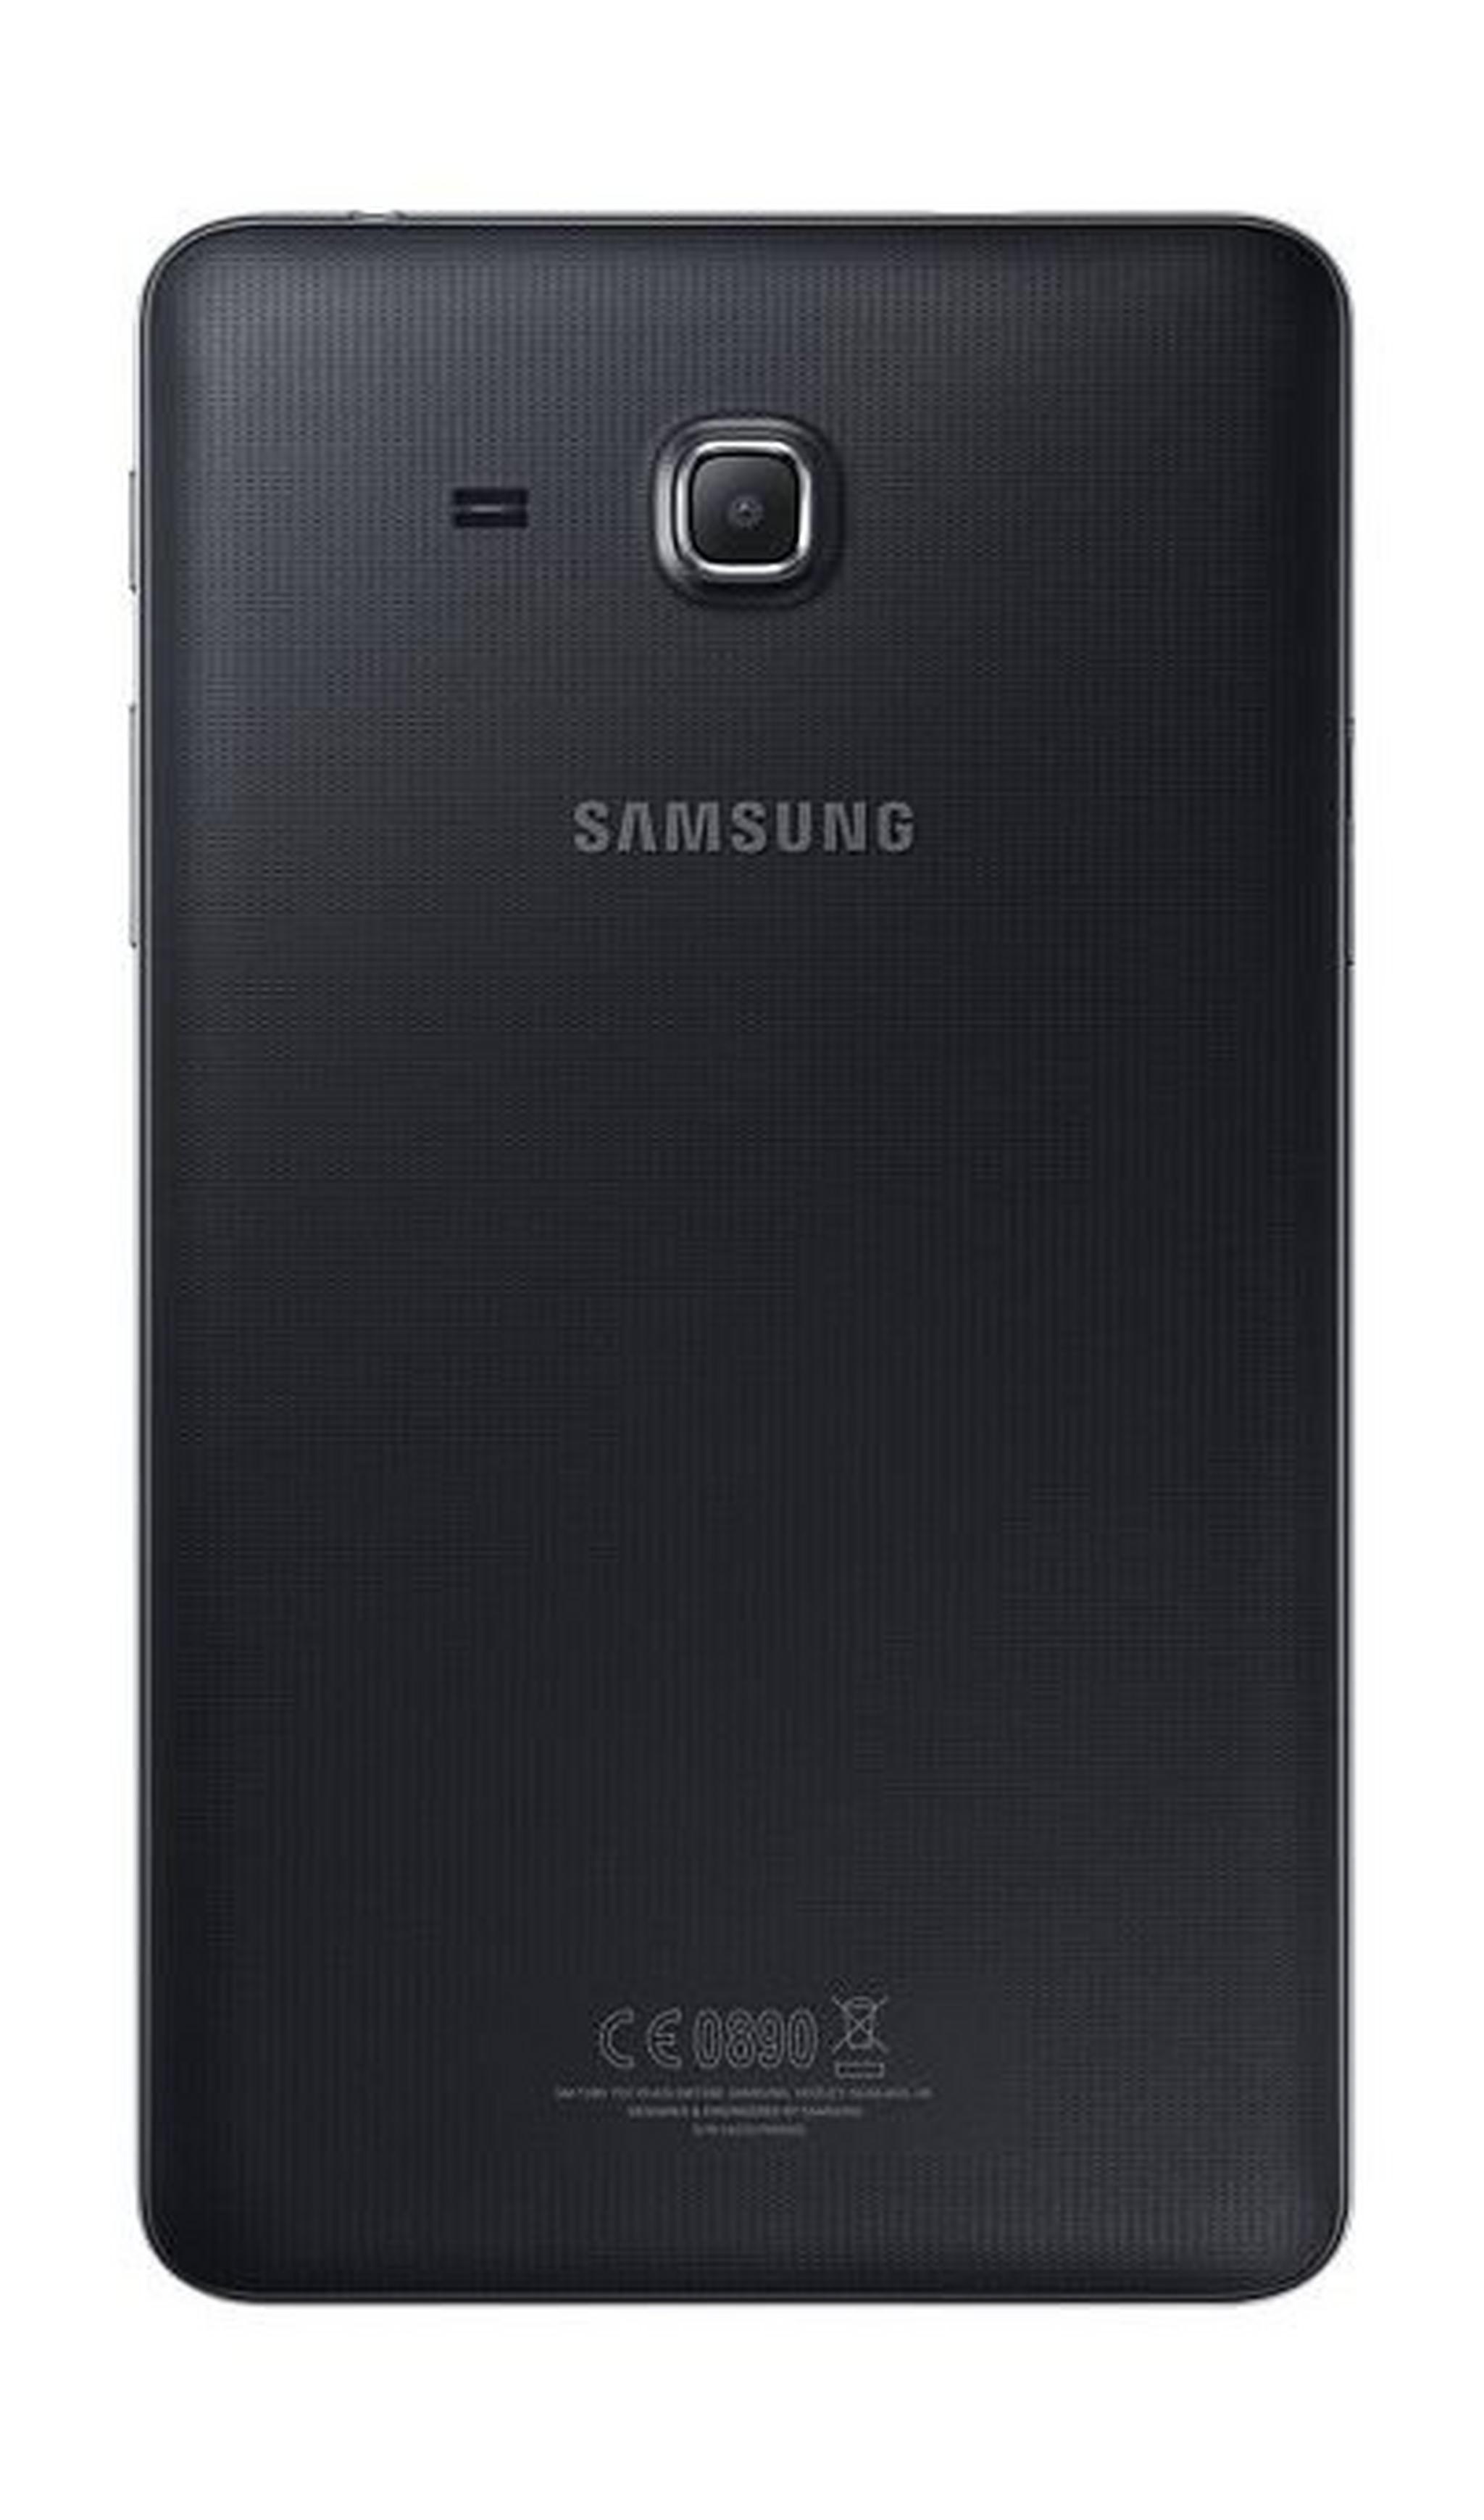 SAMSUNG Galaxy Tab A 7-inch 8GB 4G LTE Tablet - Black